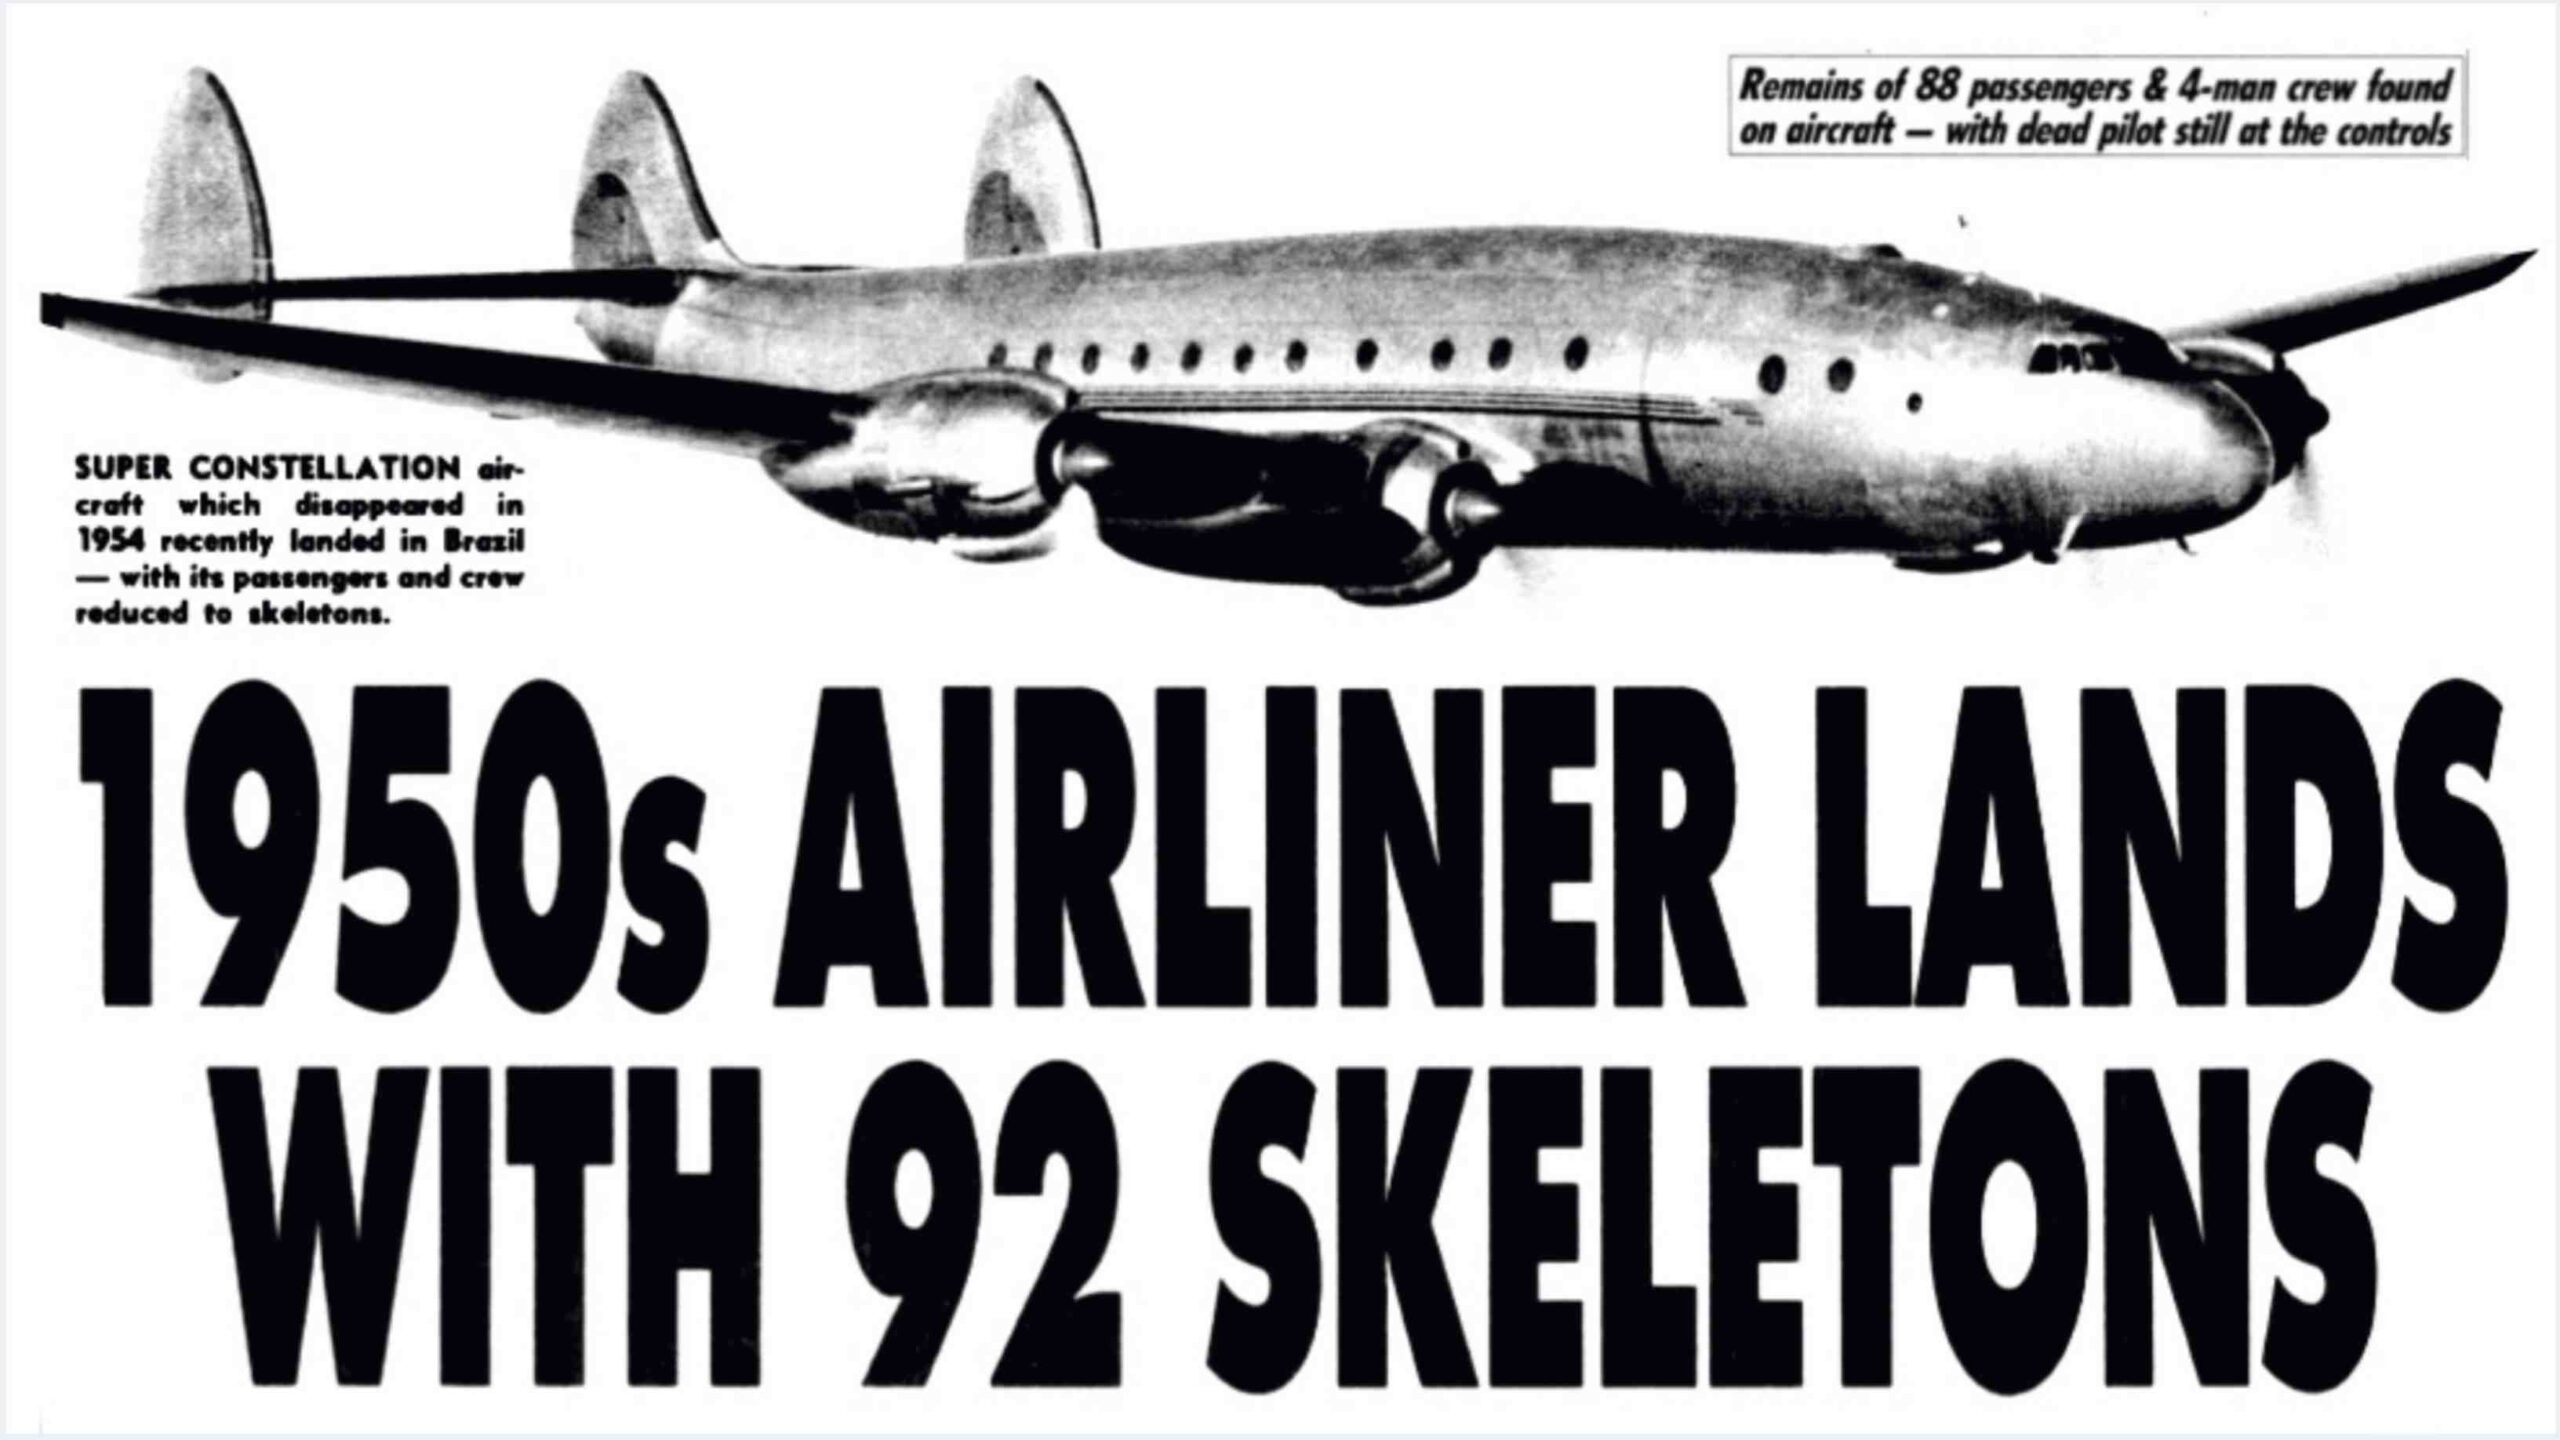 Сантьяго, рейс 513: пропавший самолет, приземлившийся через 35 лет с 92 скелетами на борту! 4